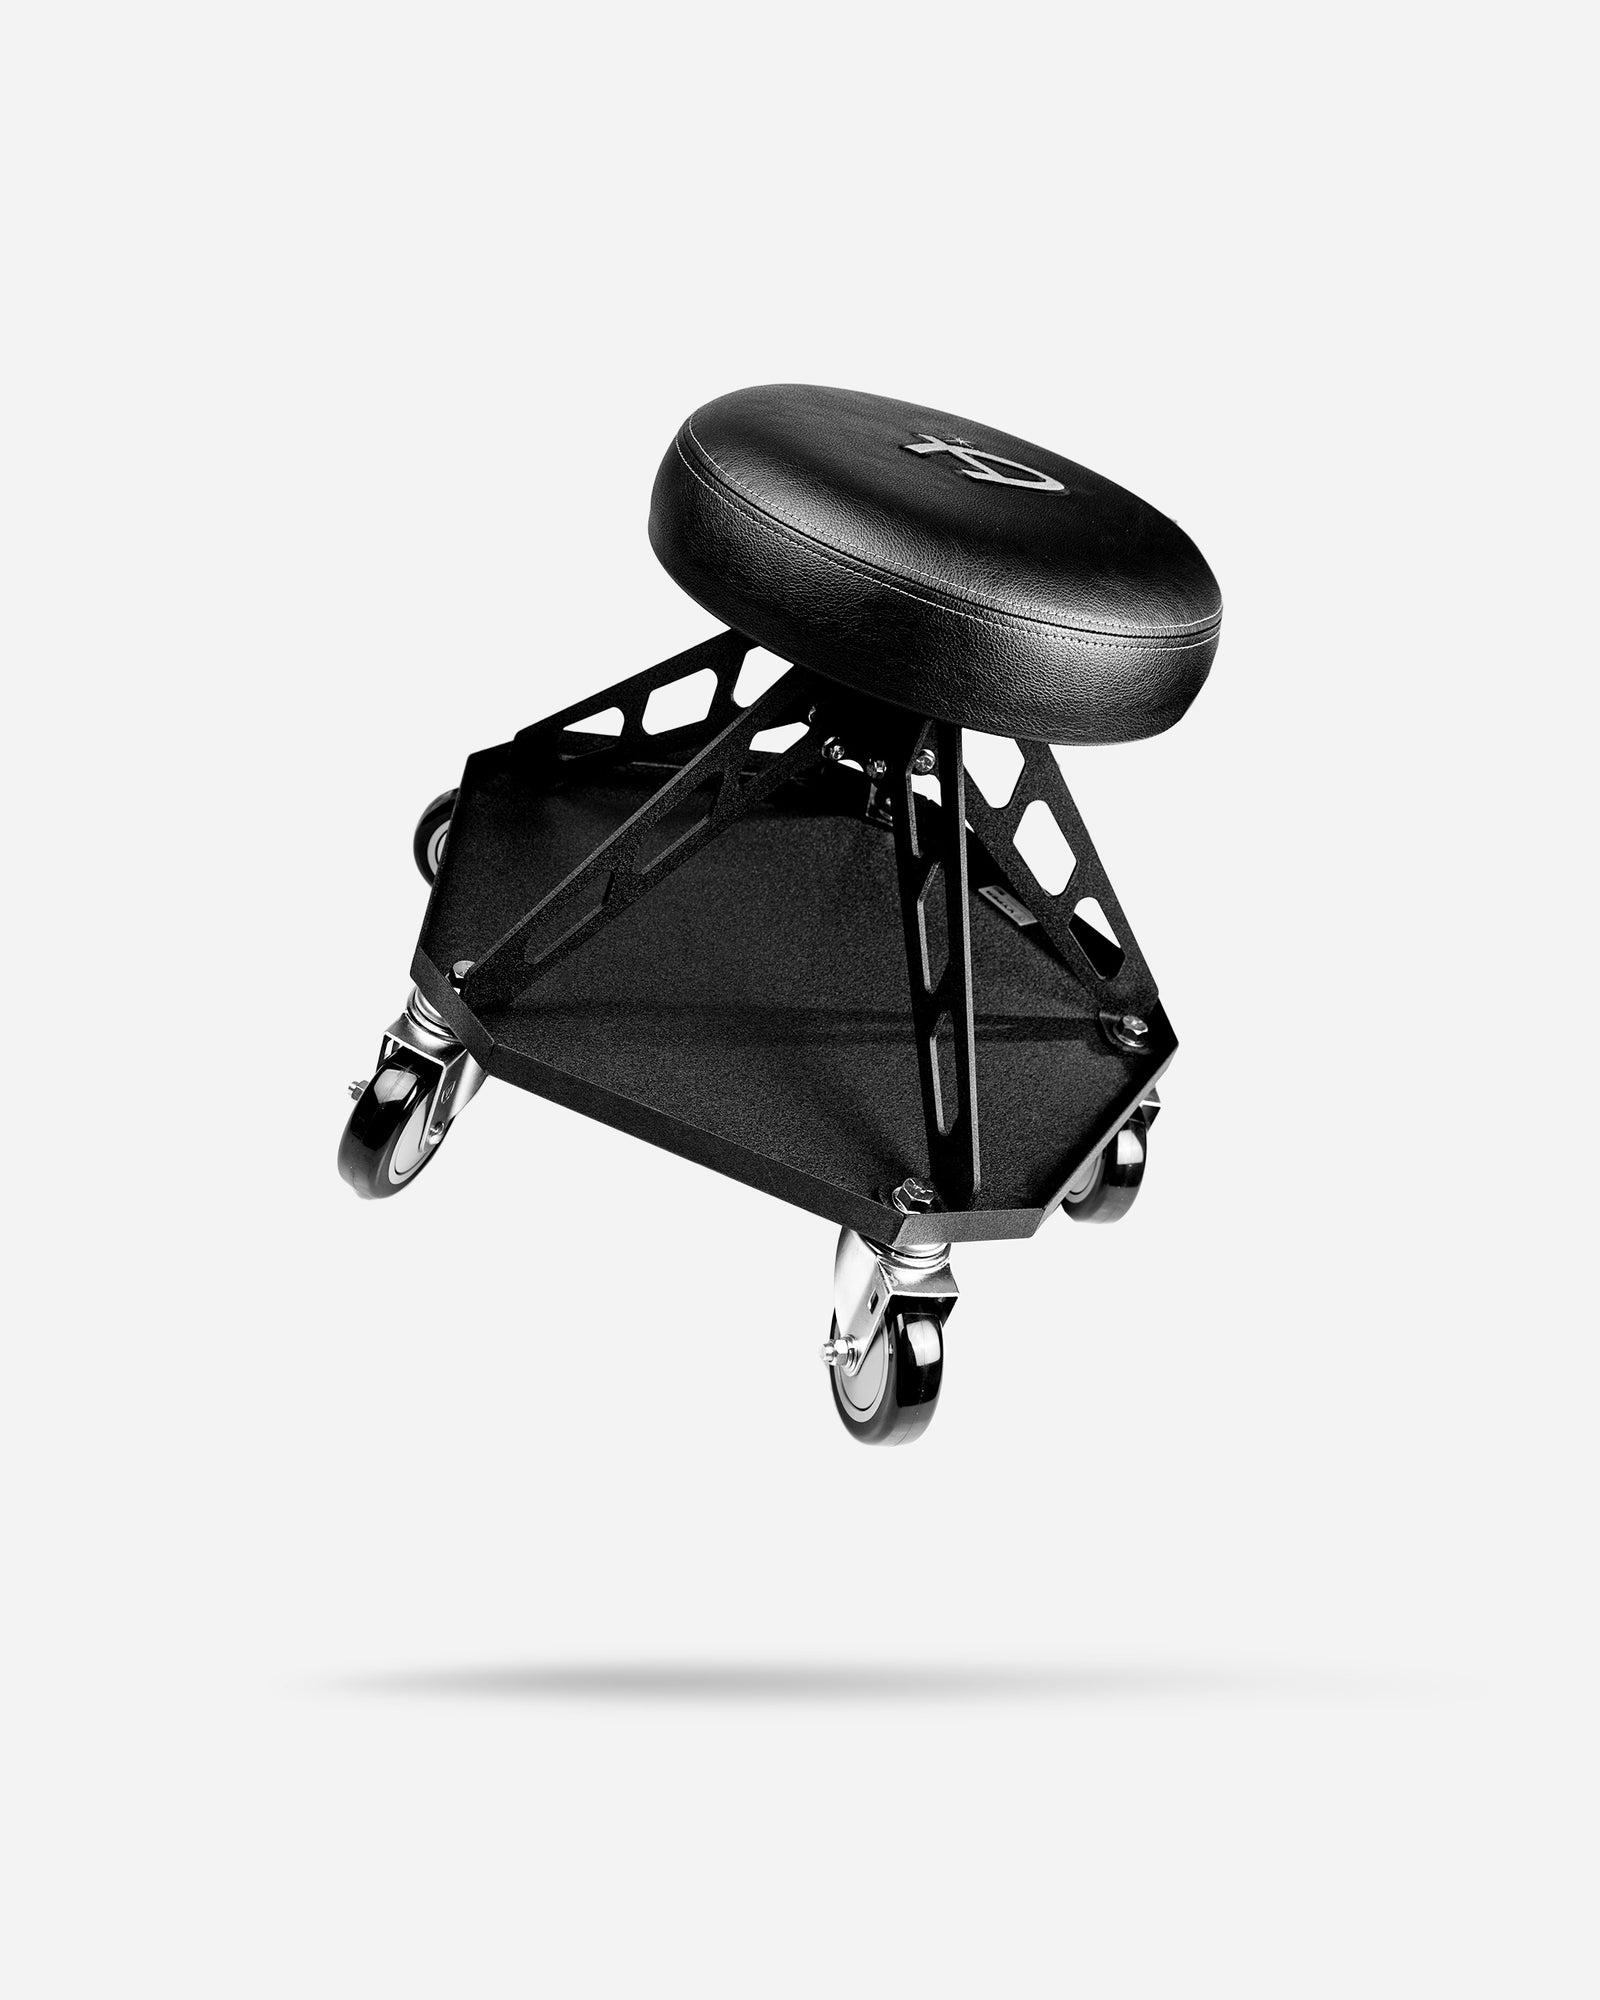 Gear Break: Vyper Chair, Fulcrum, Dynaplug, Fizik, Endura & Campagnolo Ekar  - PezCycling News